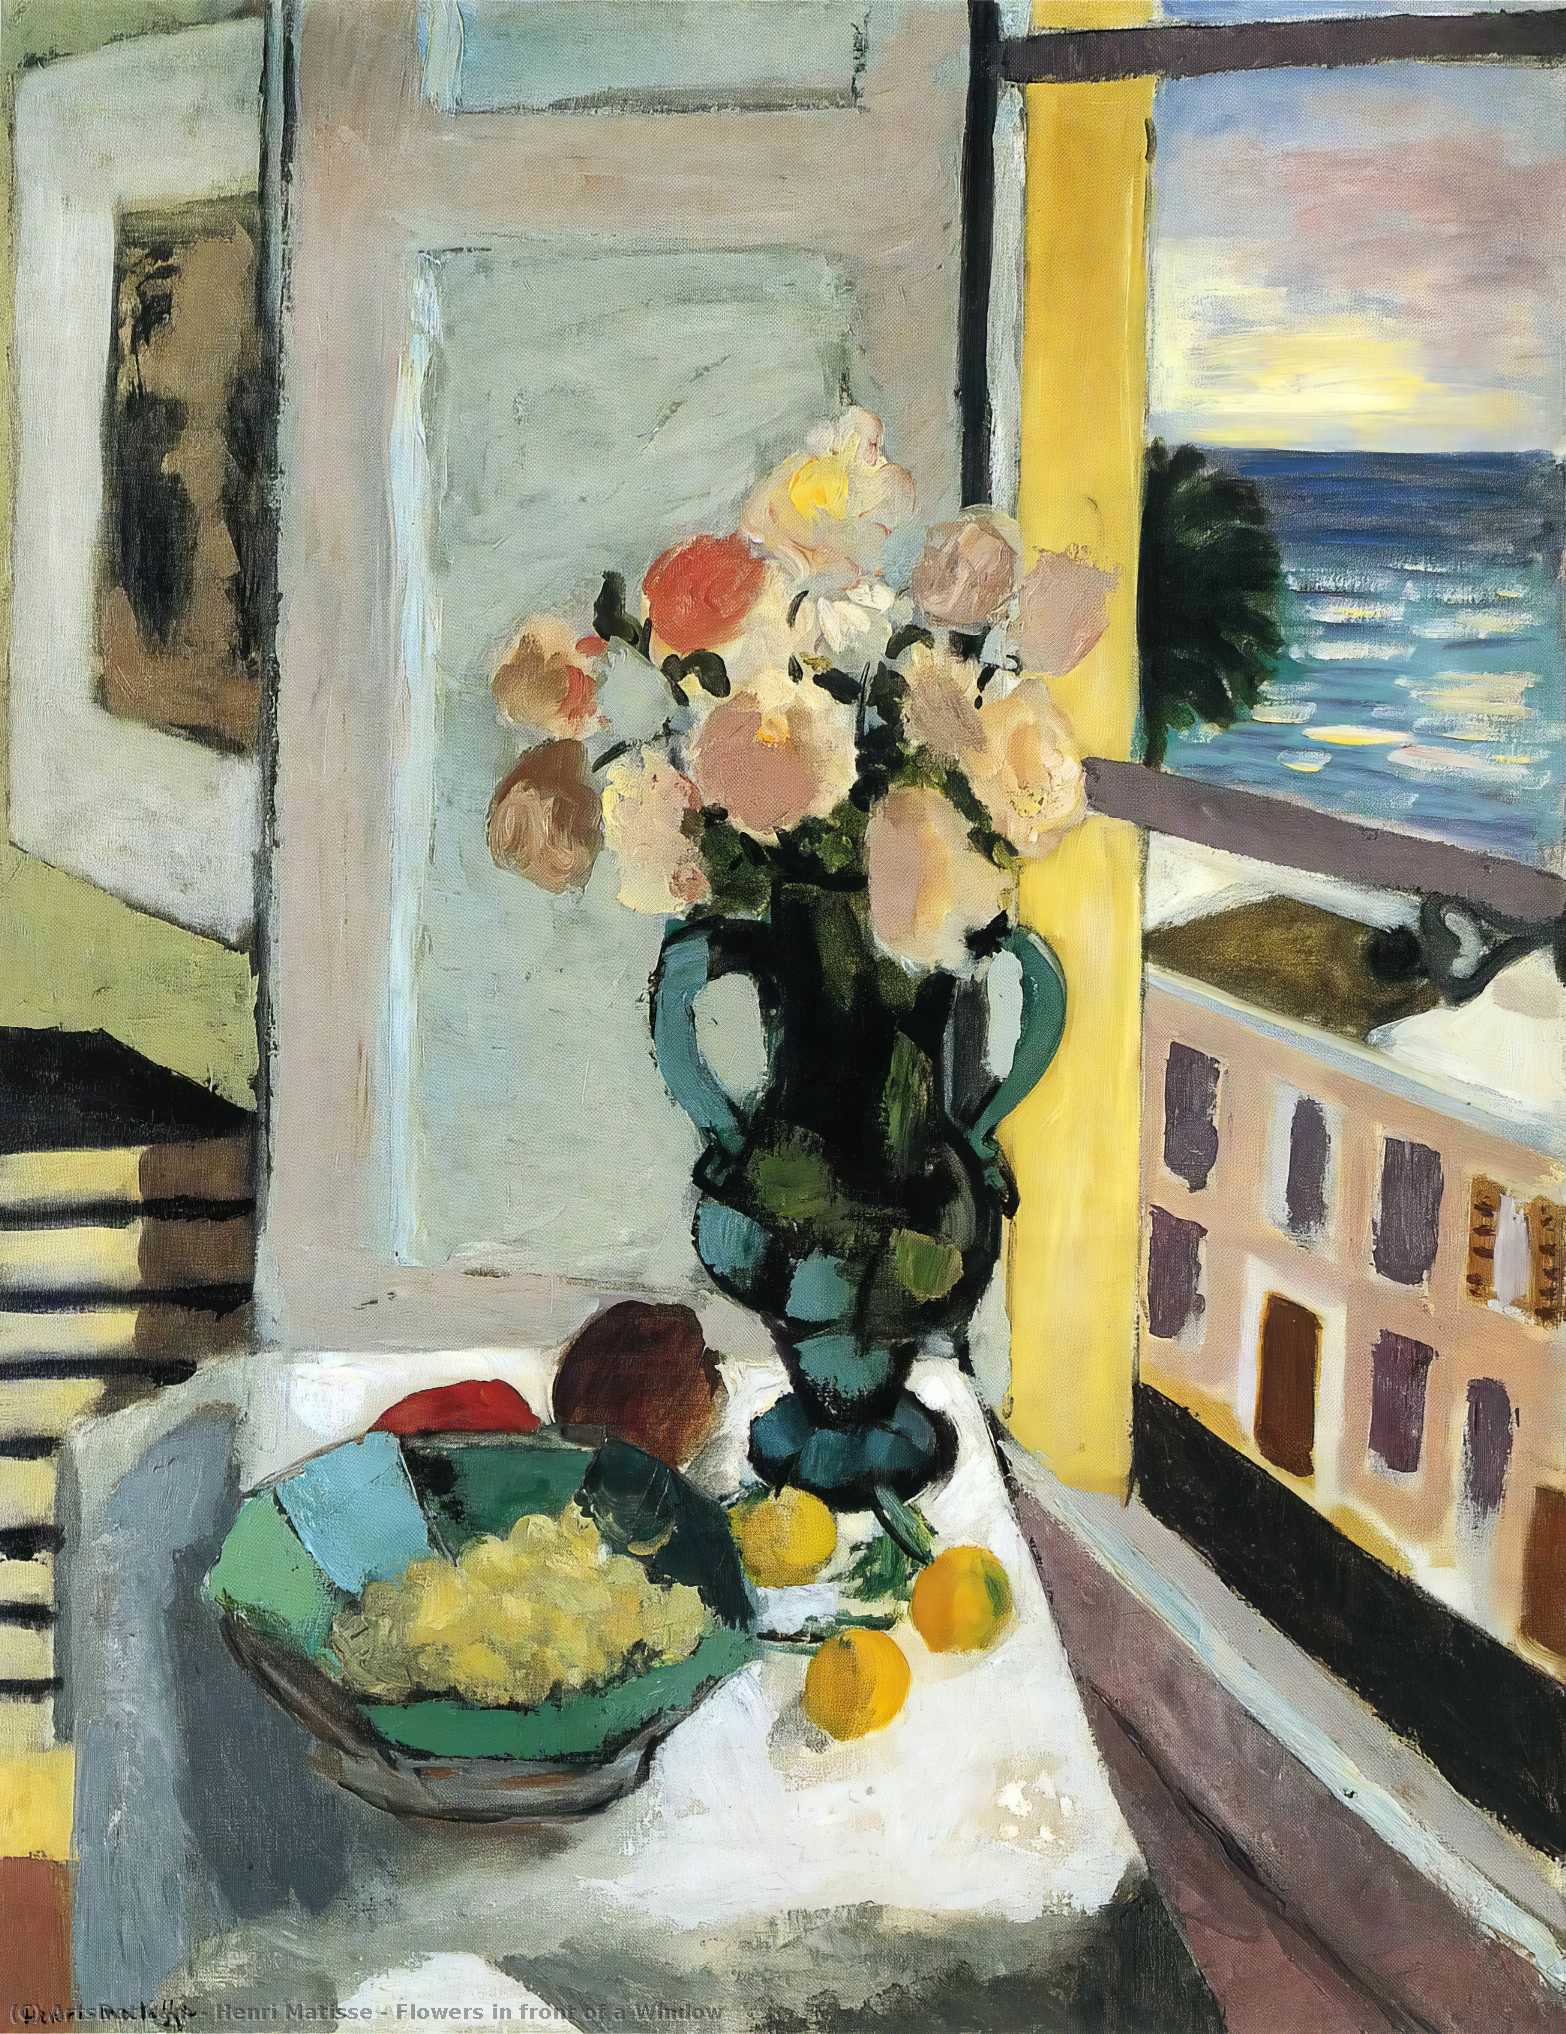 WikiOO.org - Encyclopedia of Fine Arts - Maleri, Artwork Henri Matisse - Flowers in front of a Window